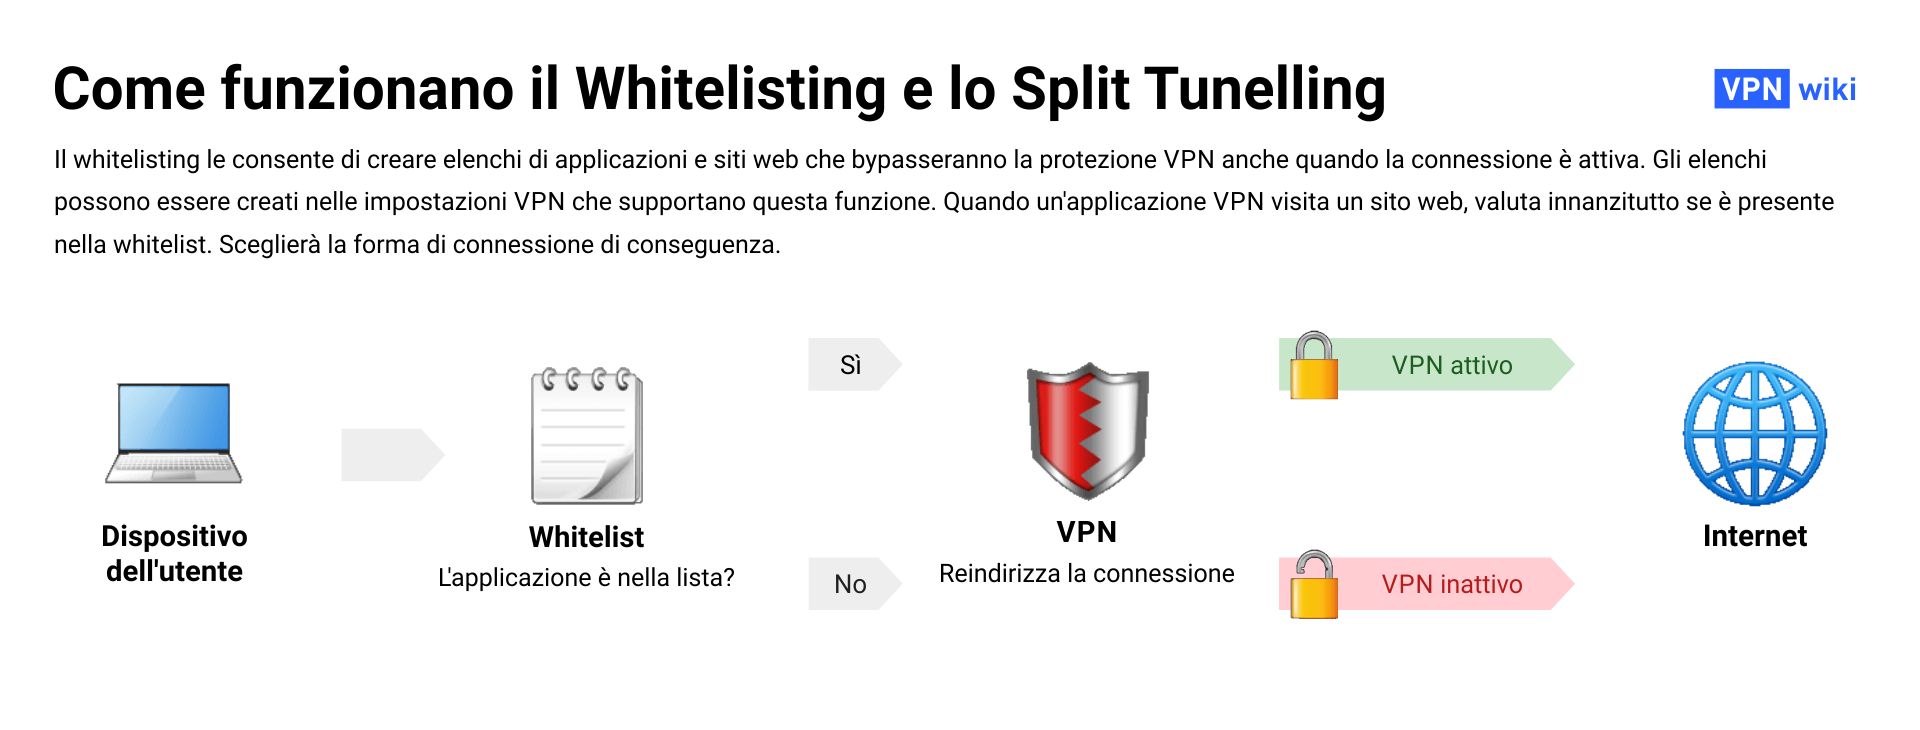 Che cos’e il whitelisting per le VPN e a cosa serve?